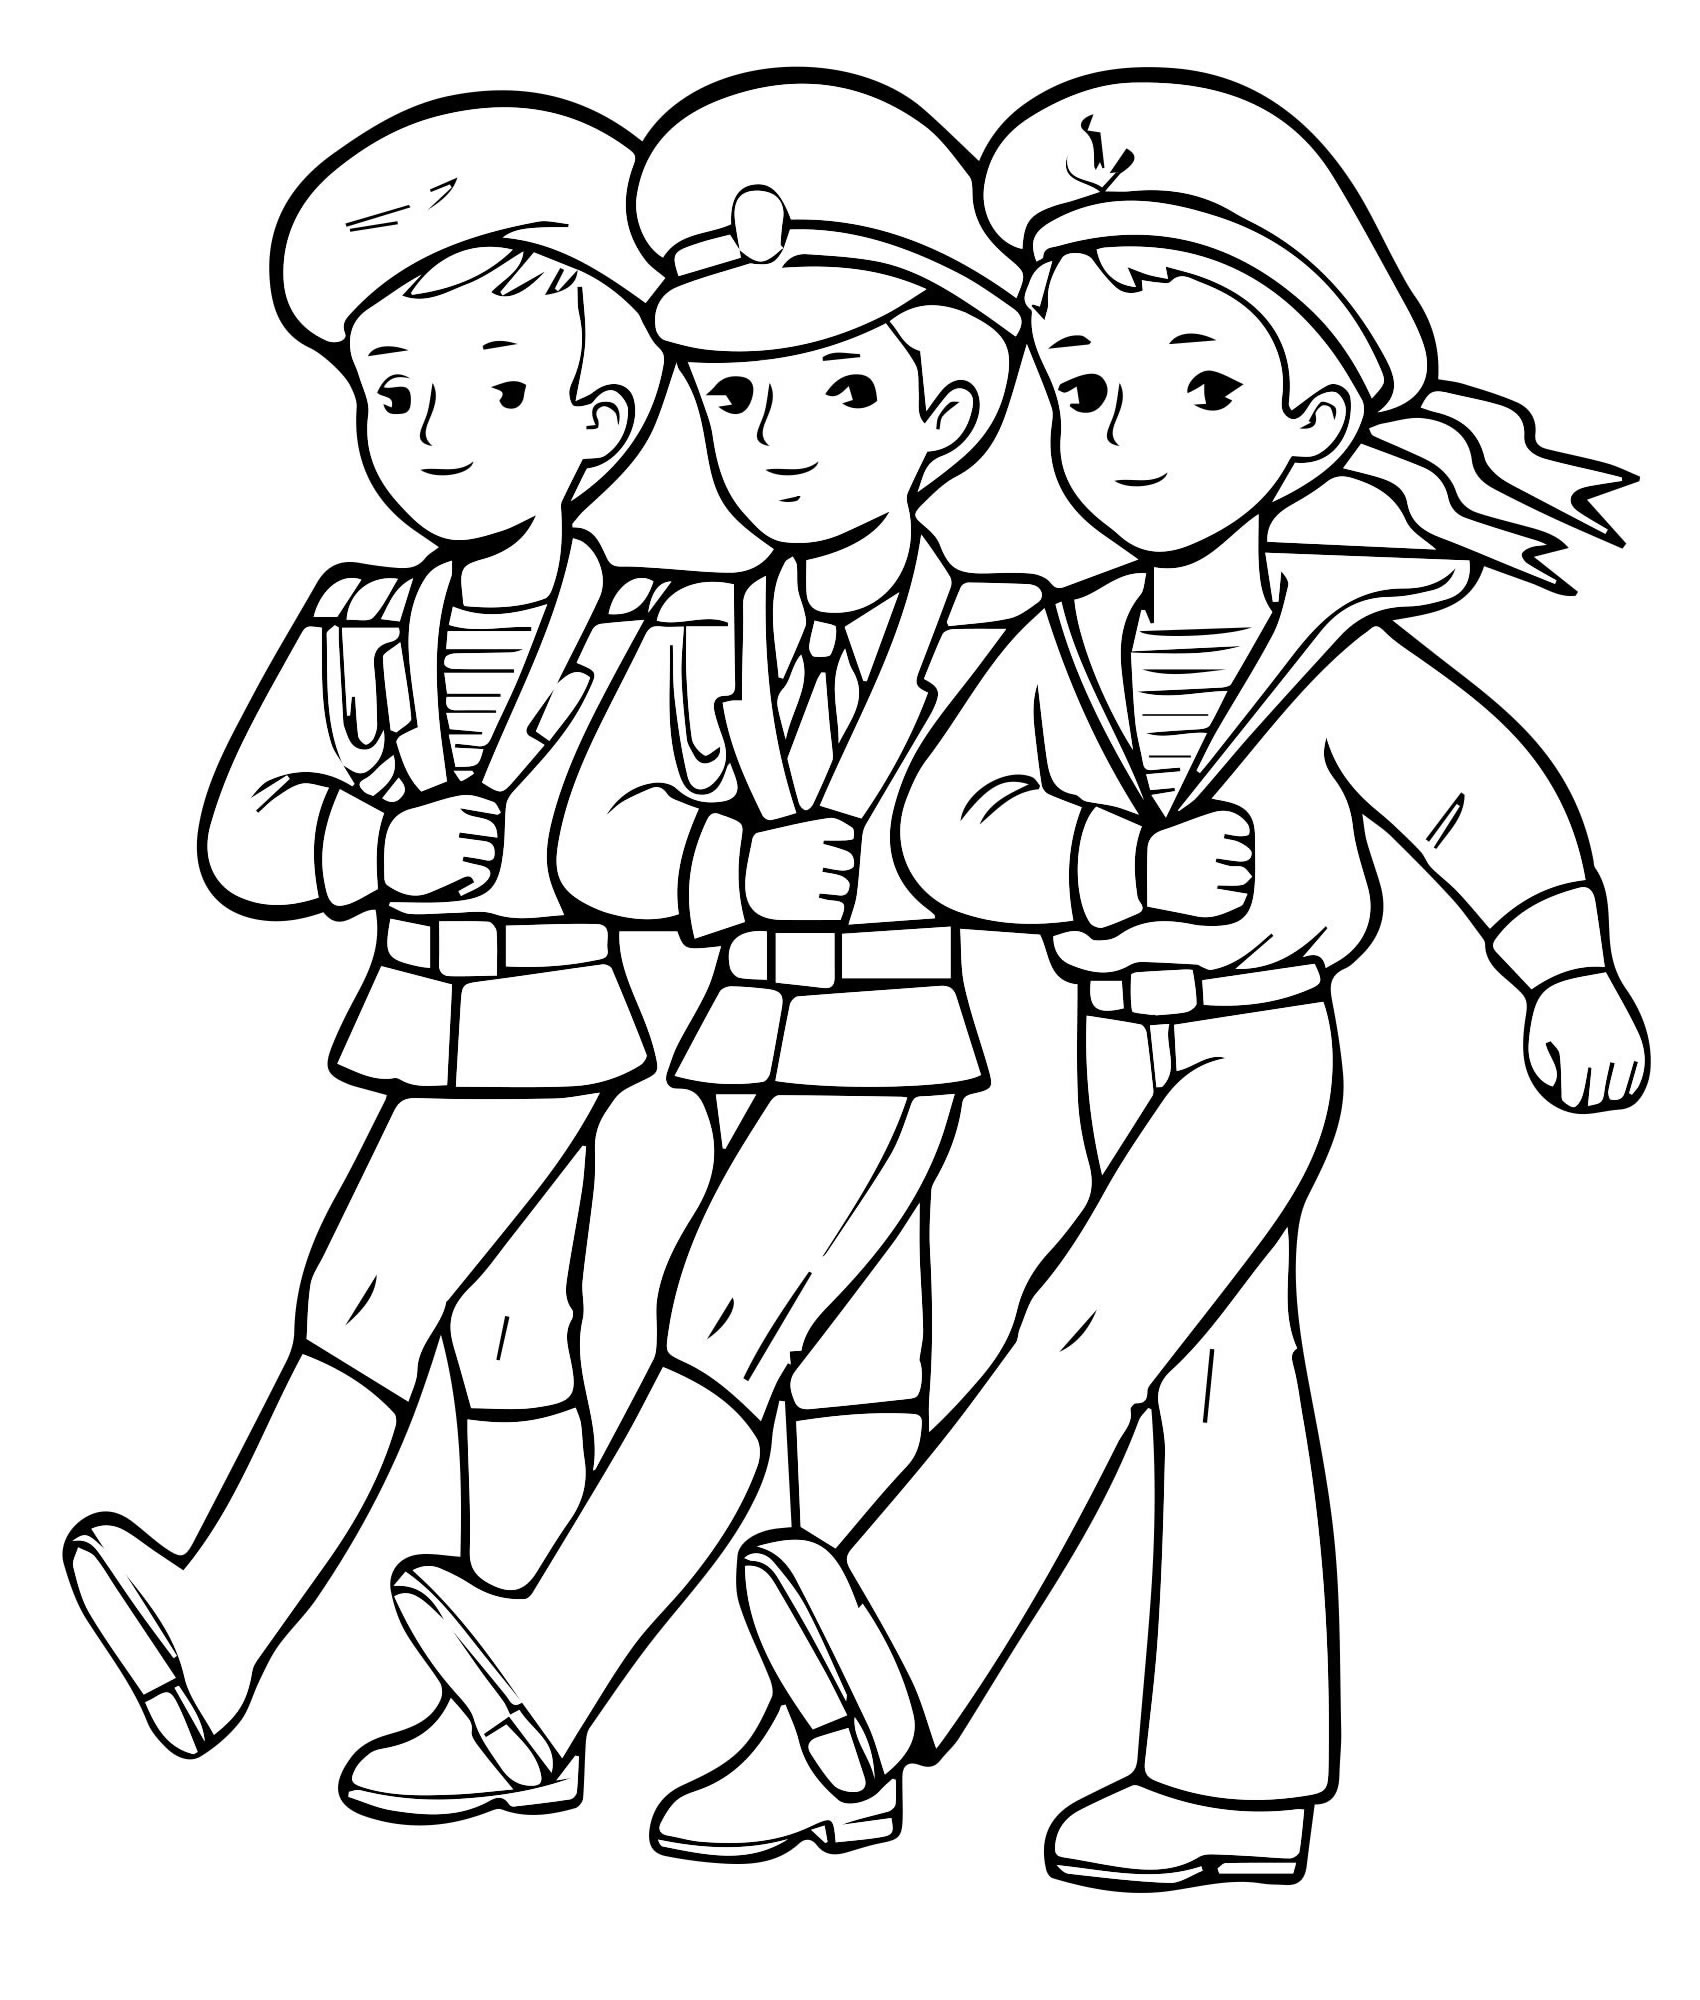 Солдаты на 23 февраля раскраска для детей